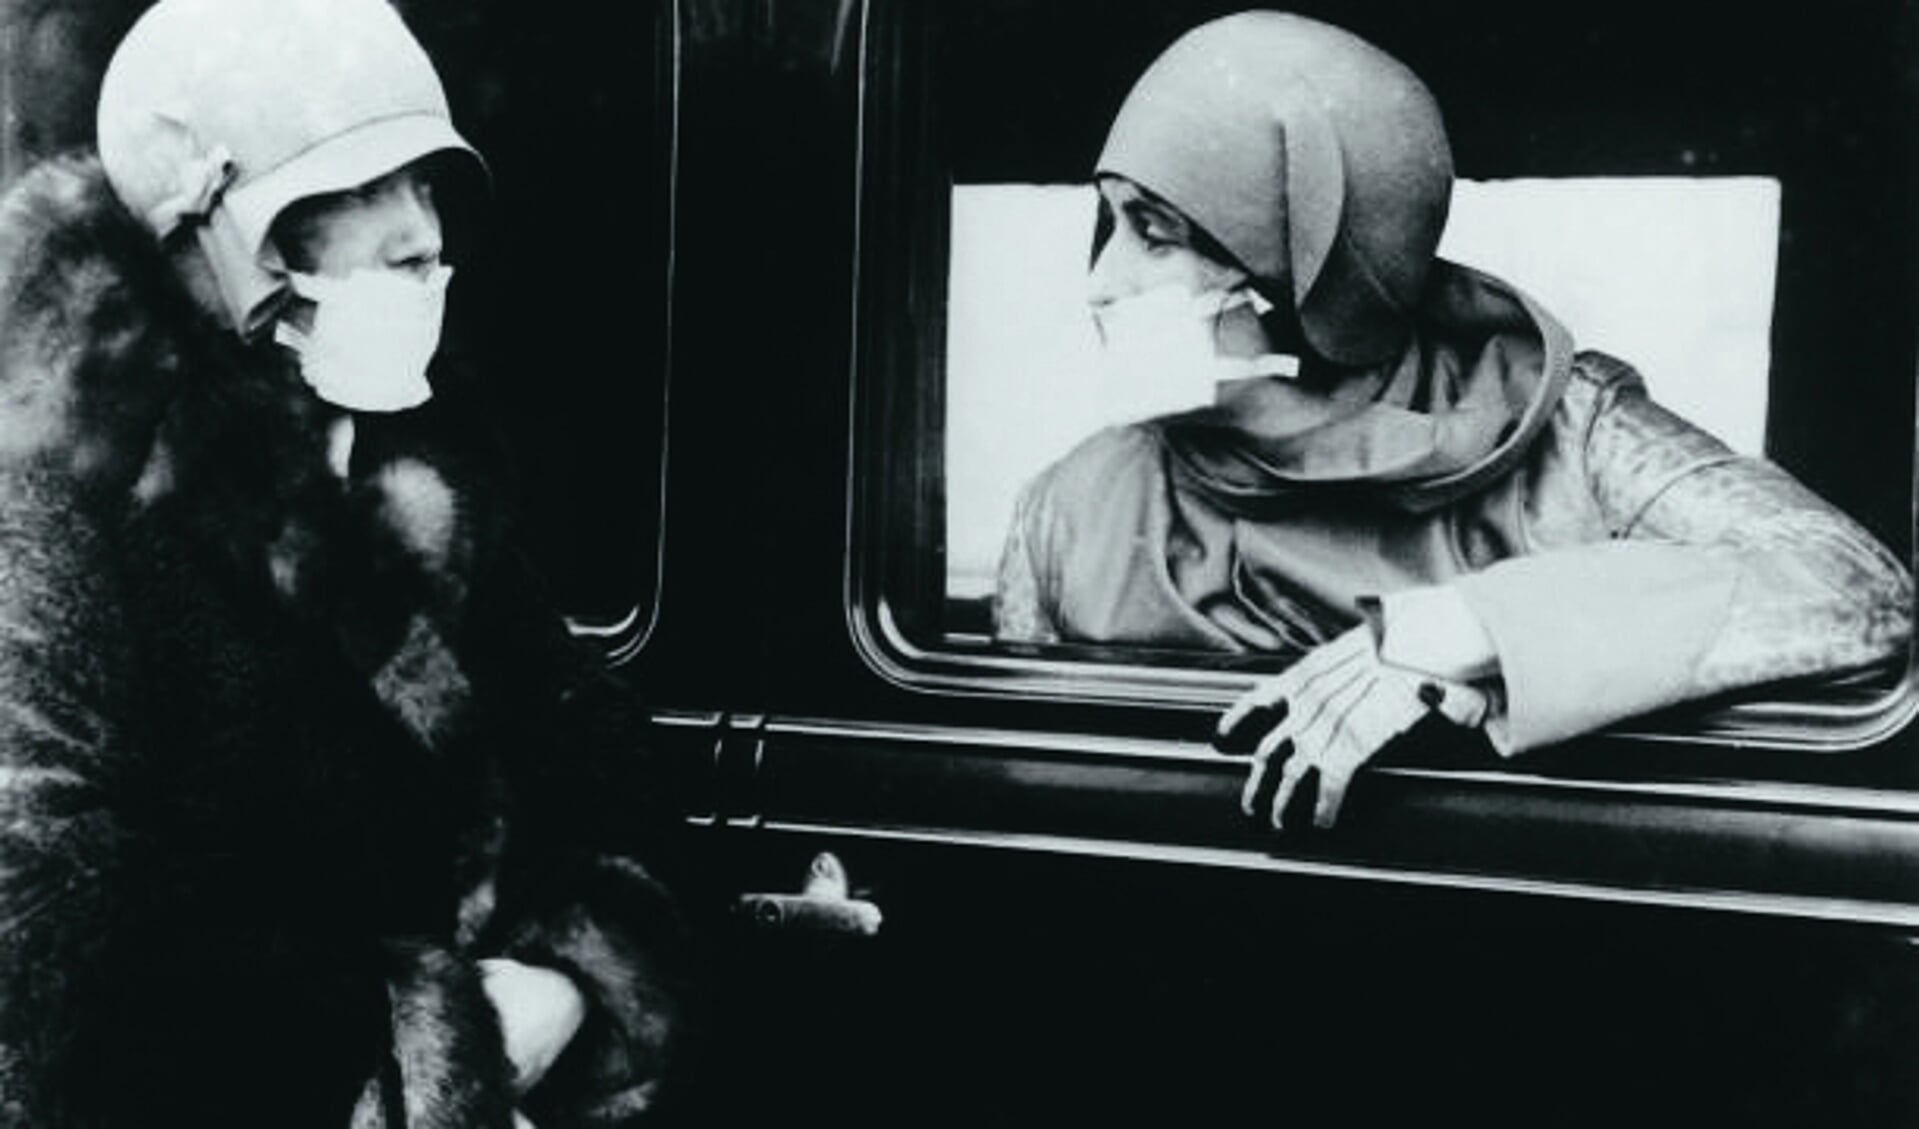 Vrouwen met mondkapjes ten tijde van de Spaanse griep, ca. 1920. Bron: website designyoutrust